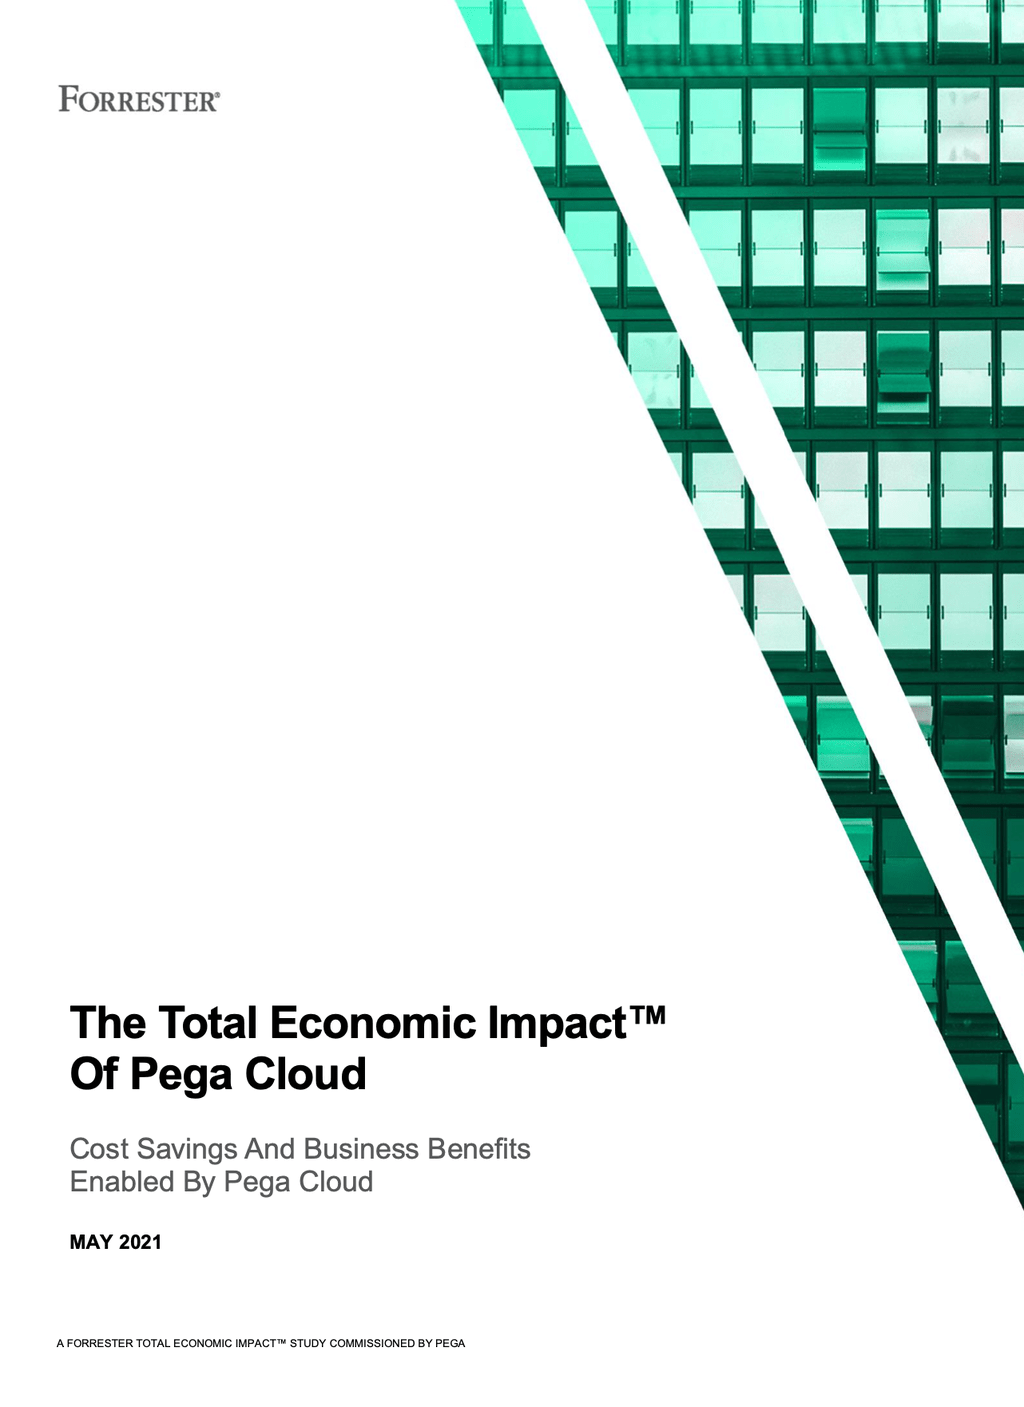 TEI of Pega Cloud Image